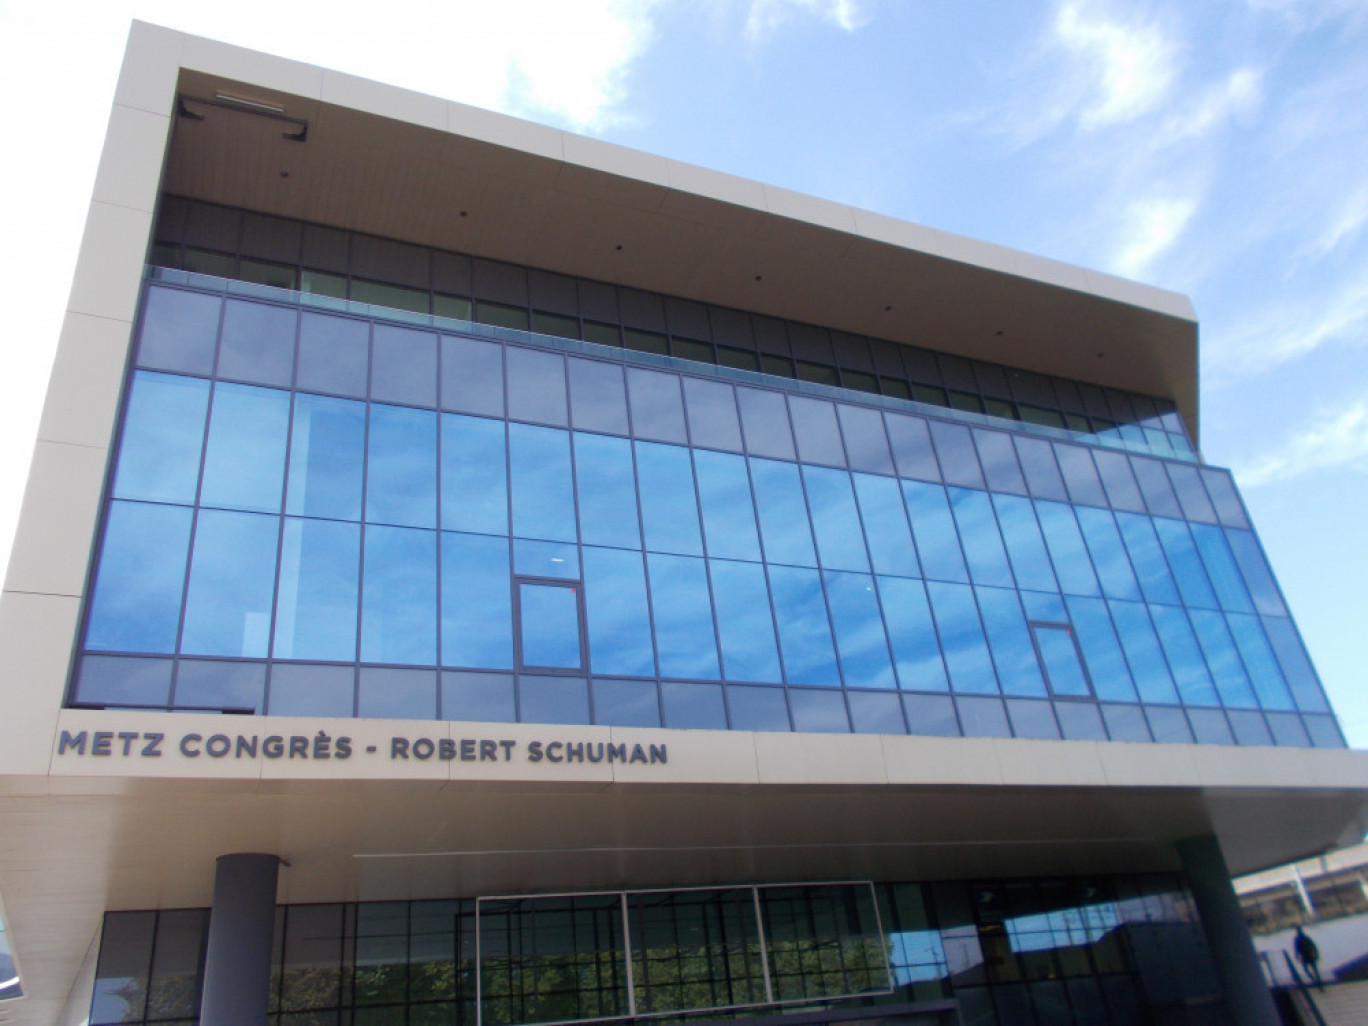 Rendez-vous à Metz Congrès-Robert Schuman en juin pour le premier salon MICE.